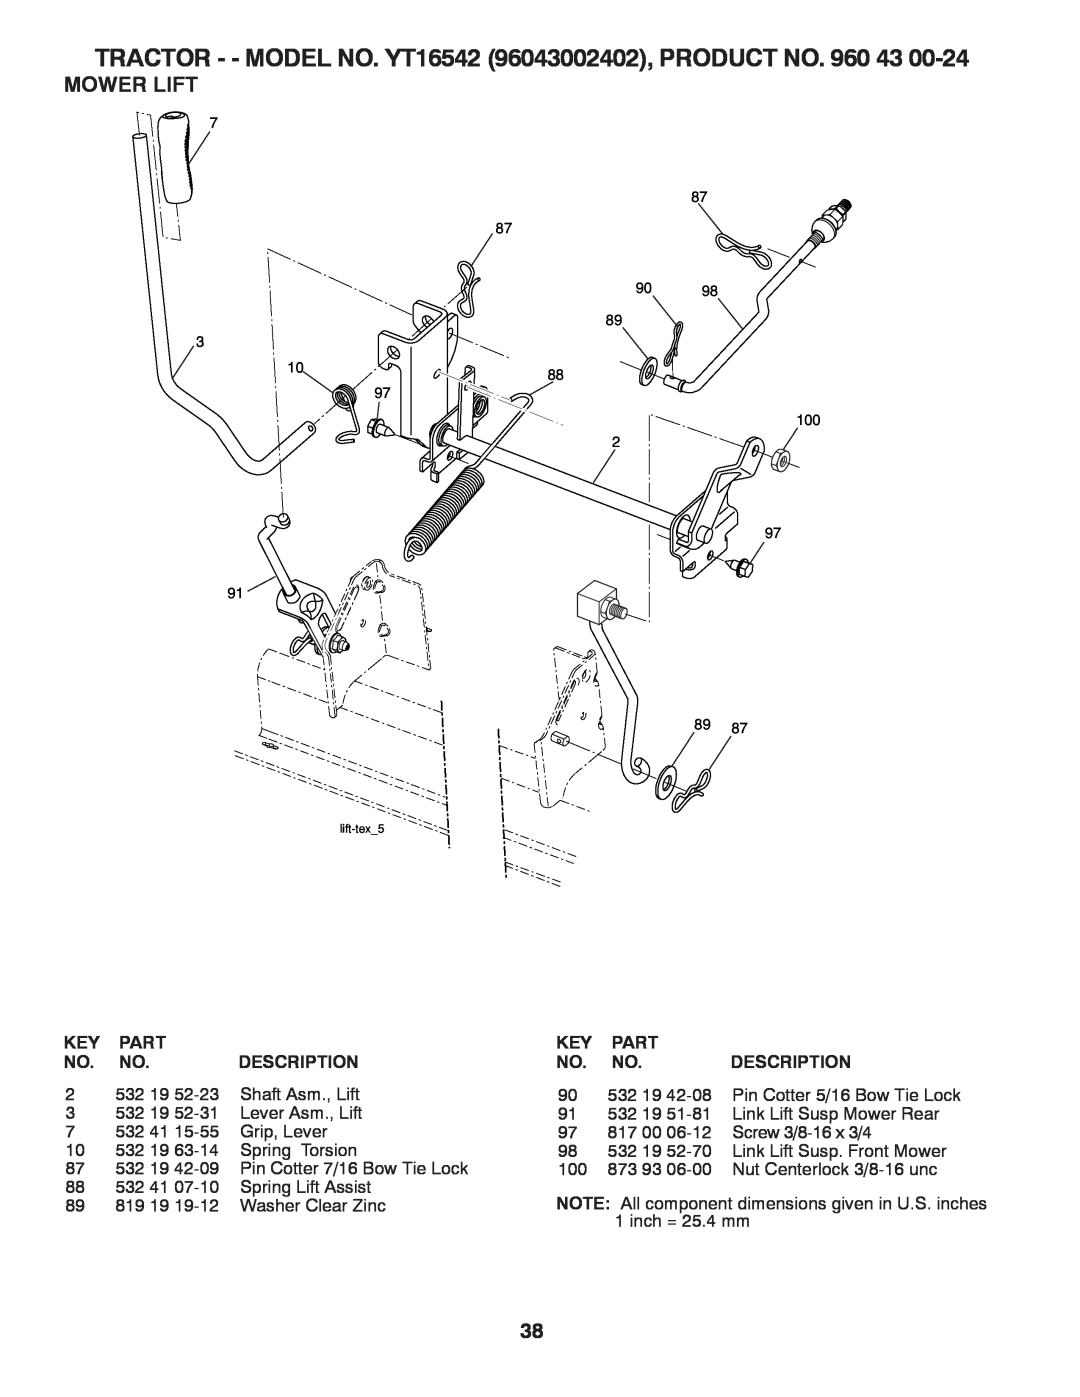 Husqvarna owner manual Mower Lift, TRACTOR - - MODEL NO. YT16542 96043002402, PRODUCT NO, lift-tex5 